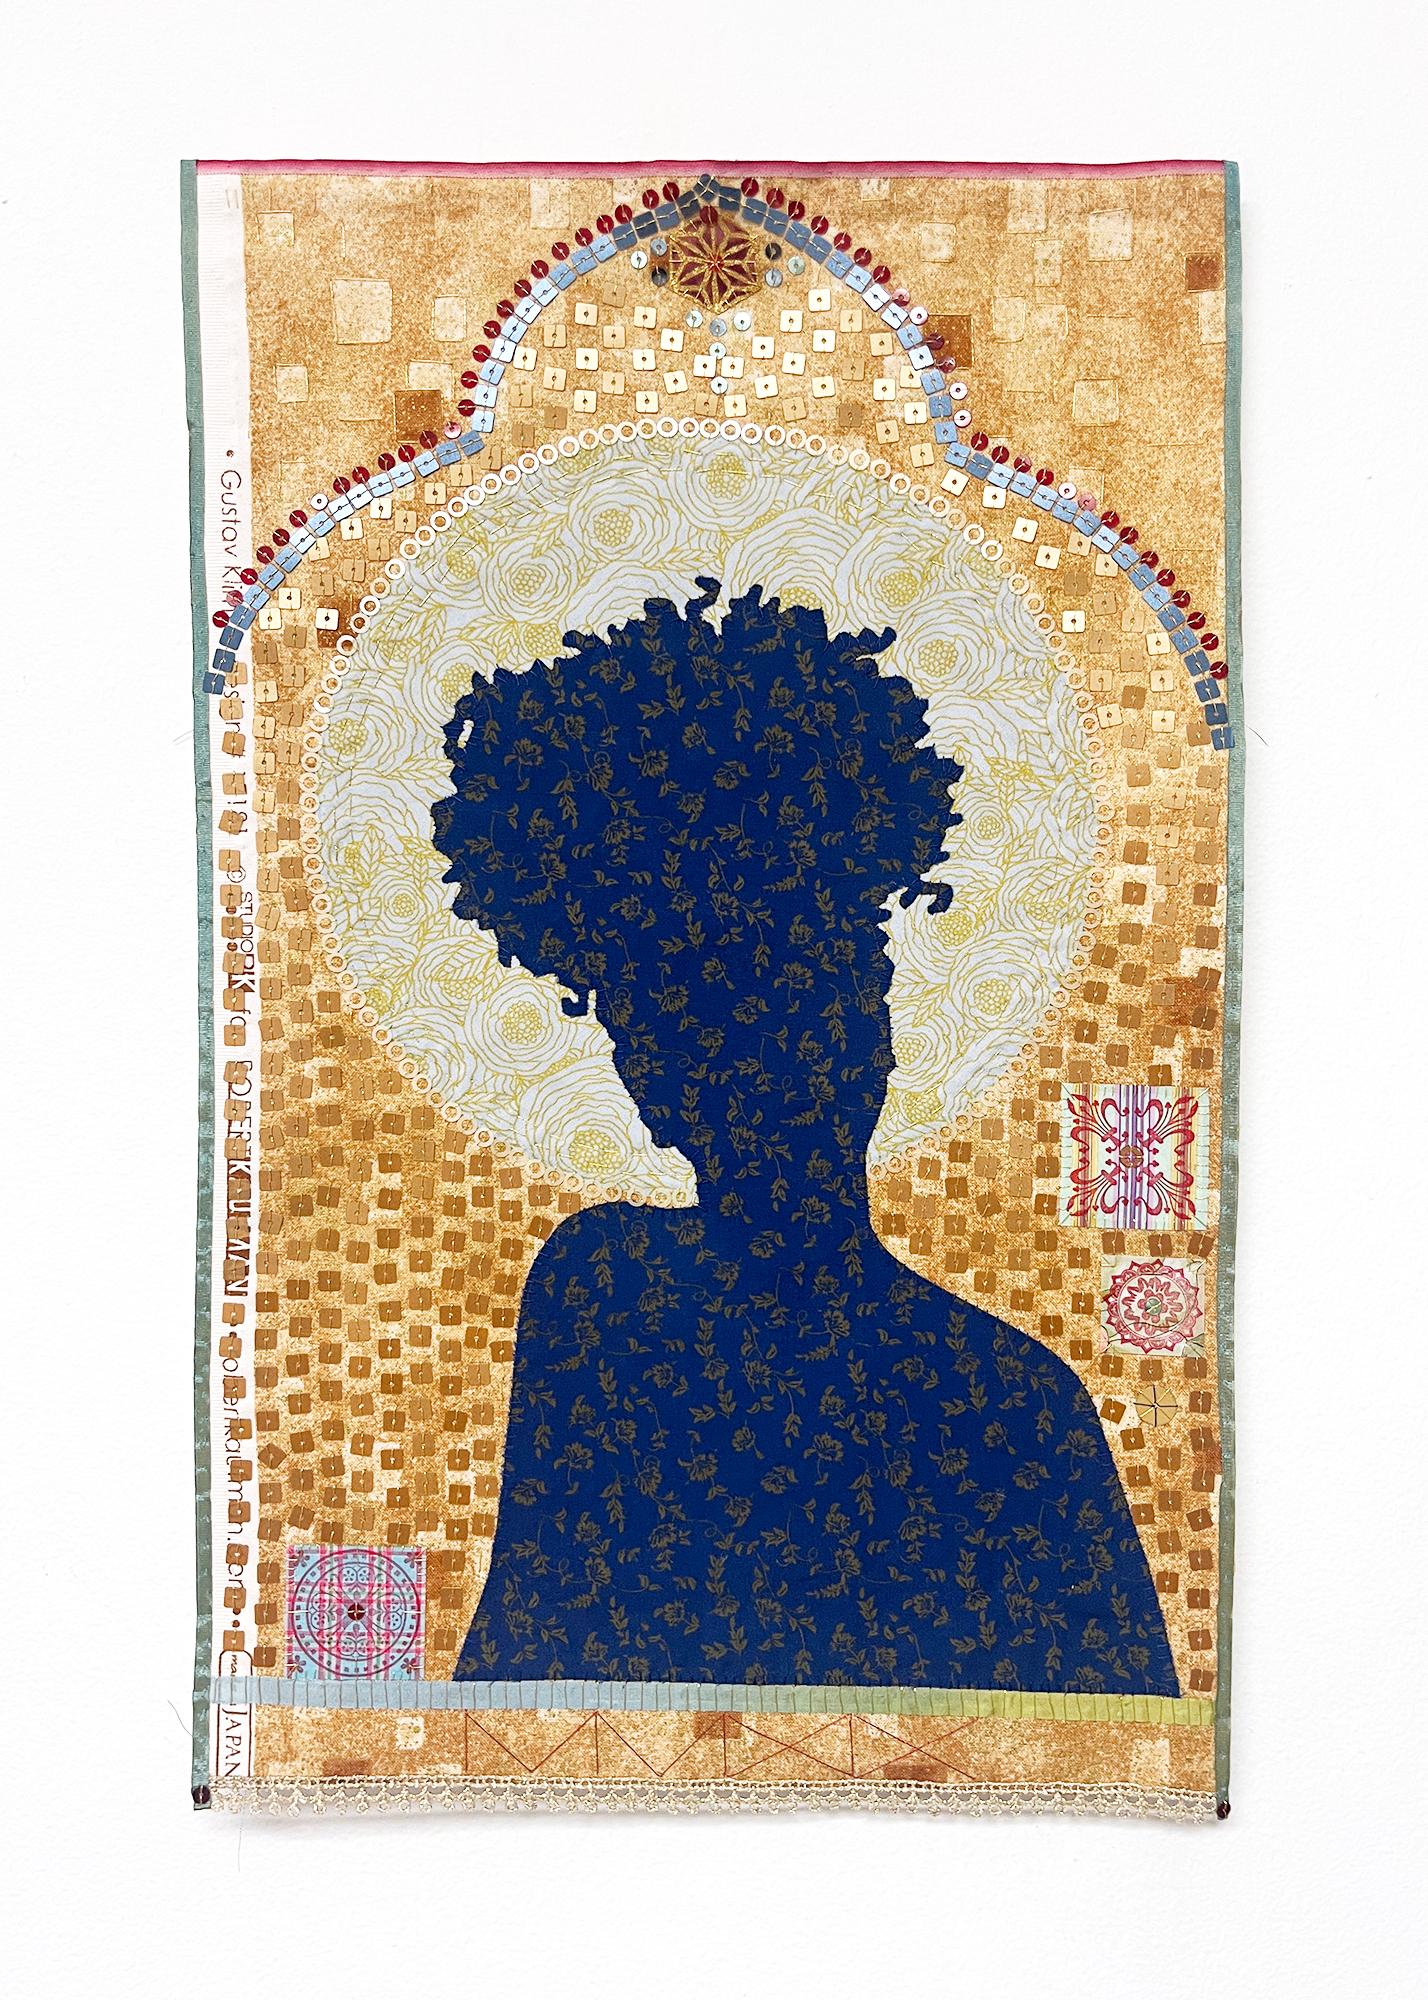 Unbenannt MM9, Silhouette, Muster, Textil, Symbol, Gold, Blau, Rot – Sculpture von Jan Testori - Markman